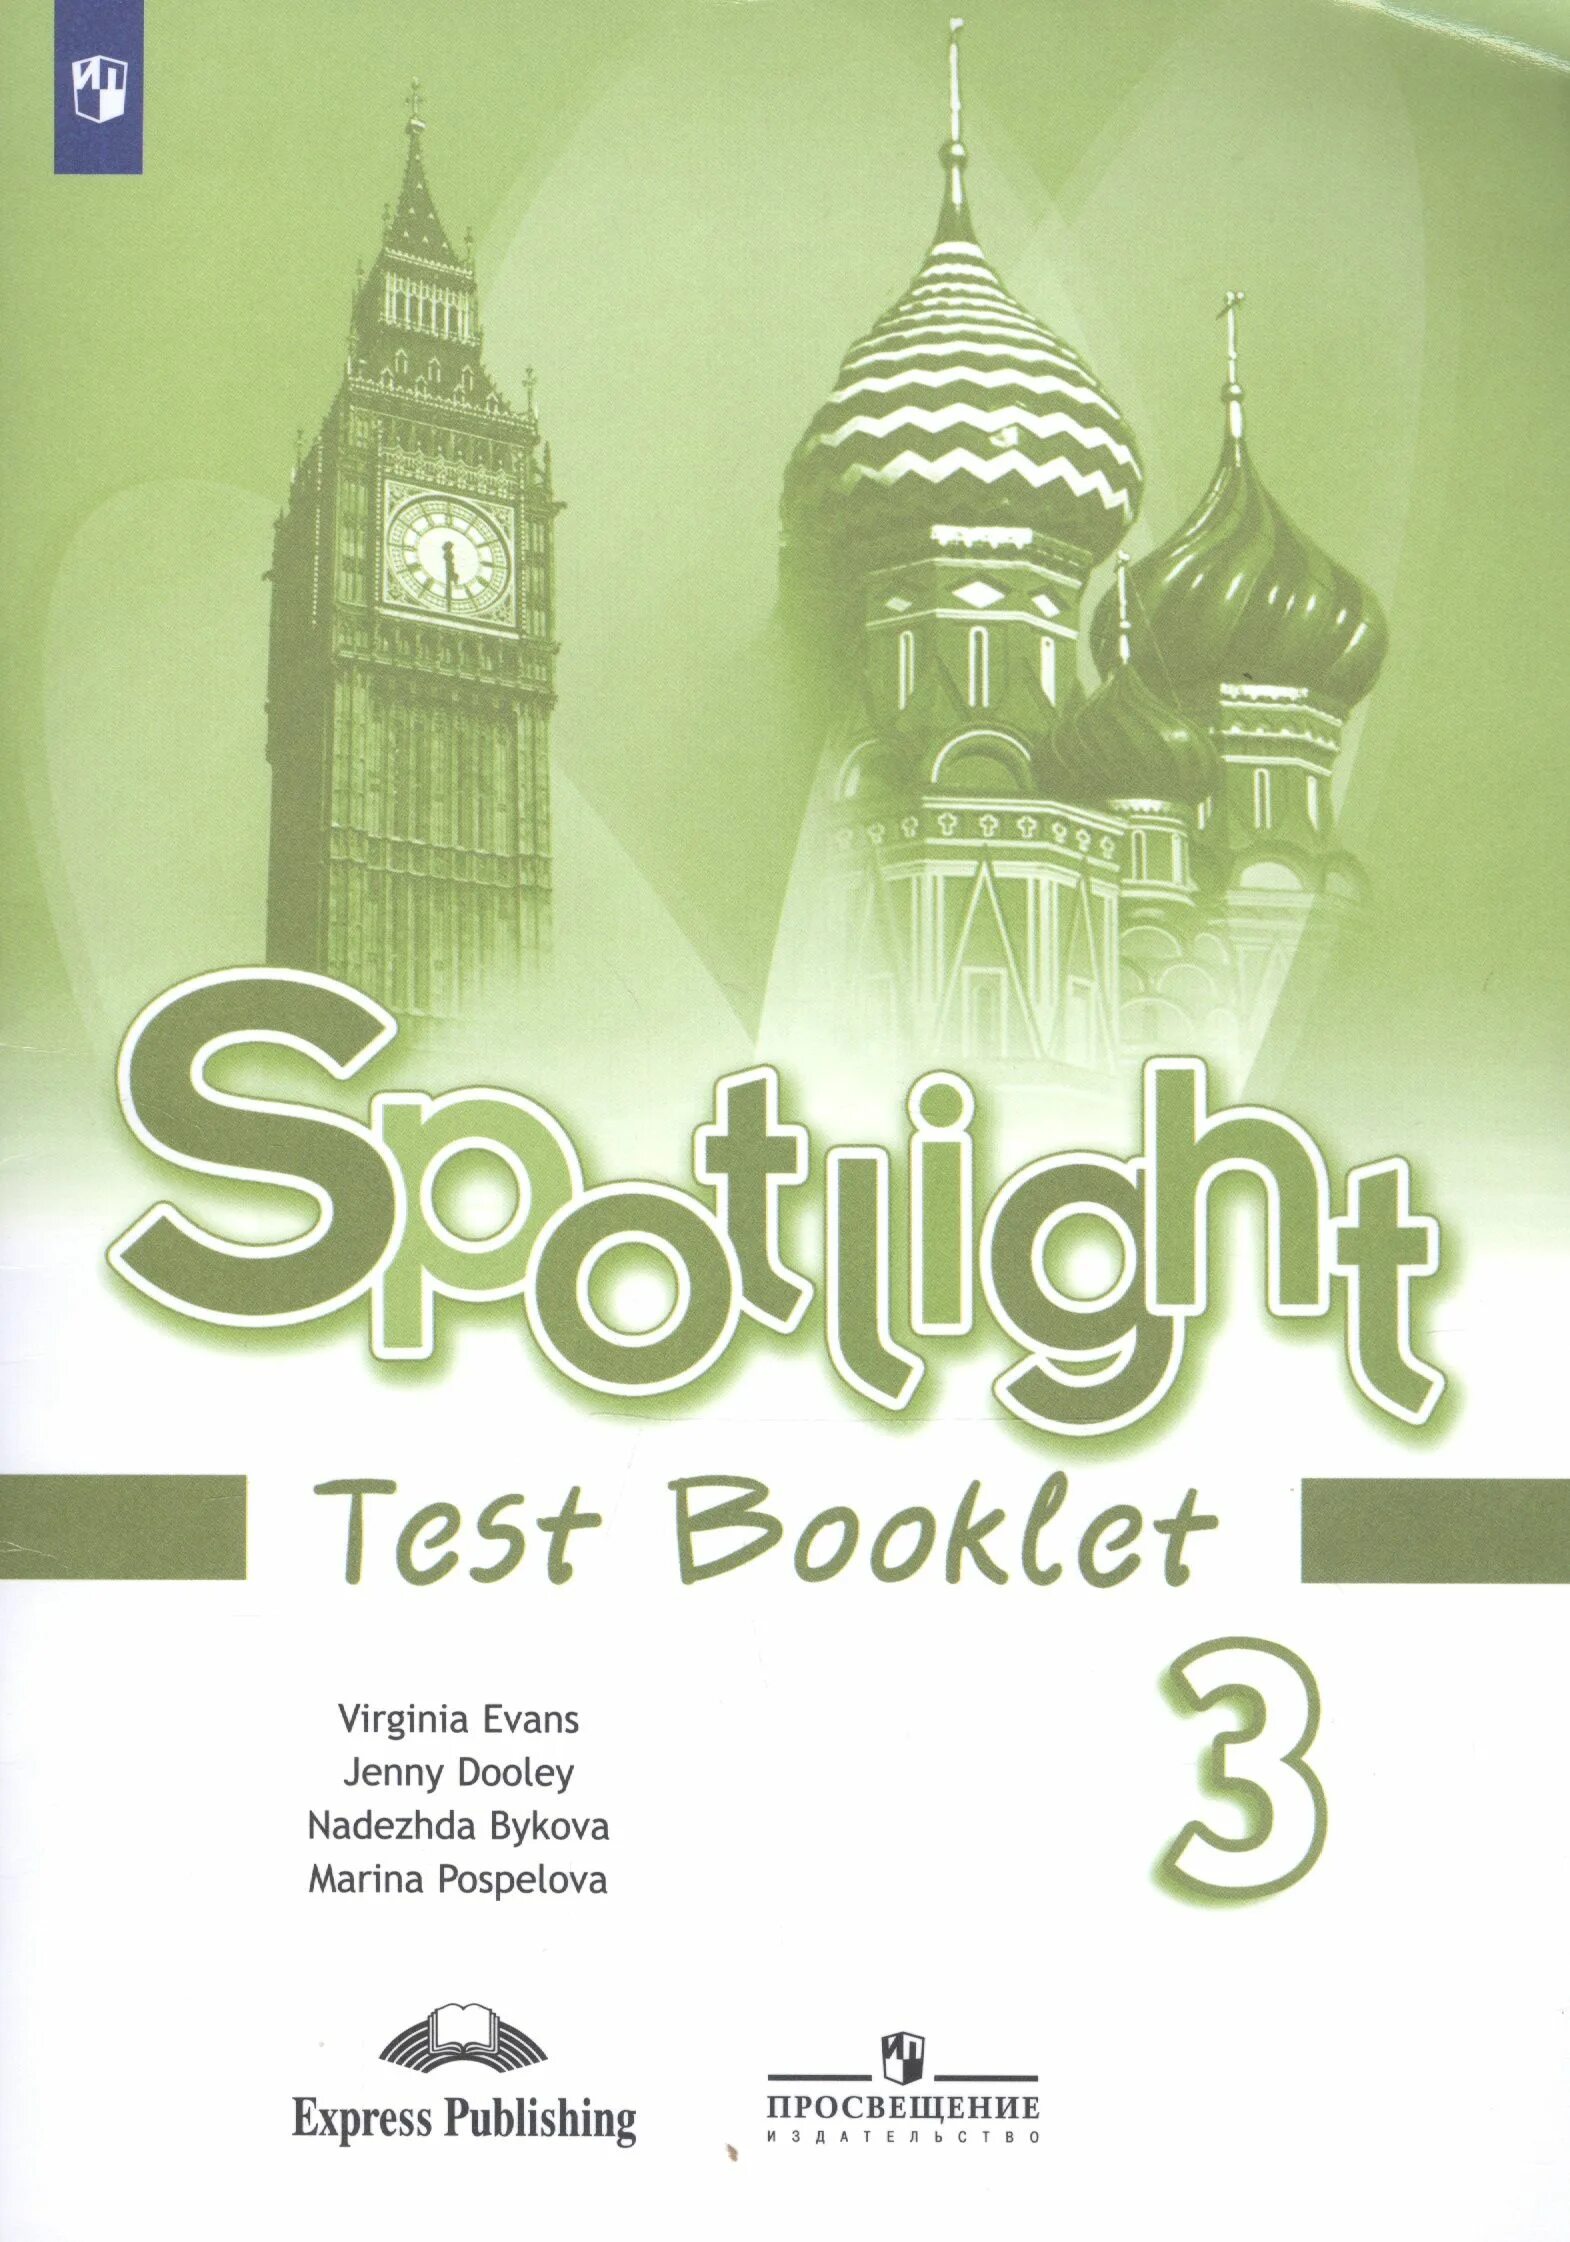 Тест английский спотлайт 3 класс. Spotlight 5 Test booklet английский язык ваулина ю.е.. Spotlight 5 класс контрольные задания. Spotlight 3 Test booklet. Test booklet 5 класс Spotlight.